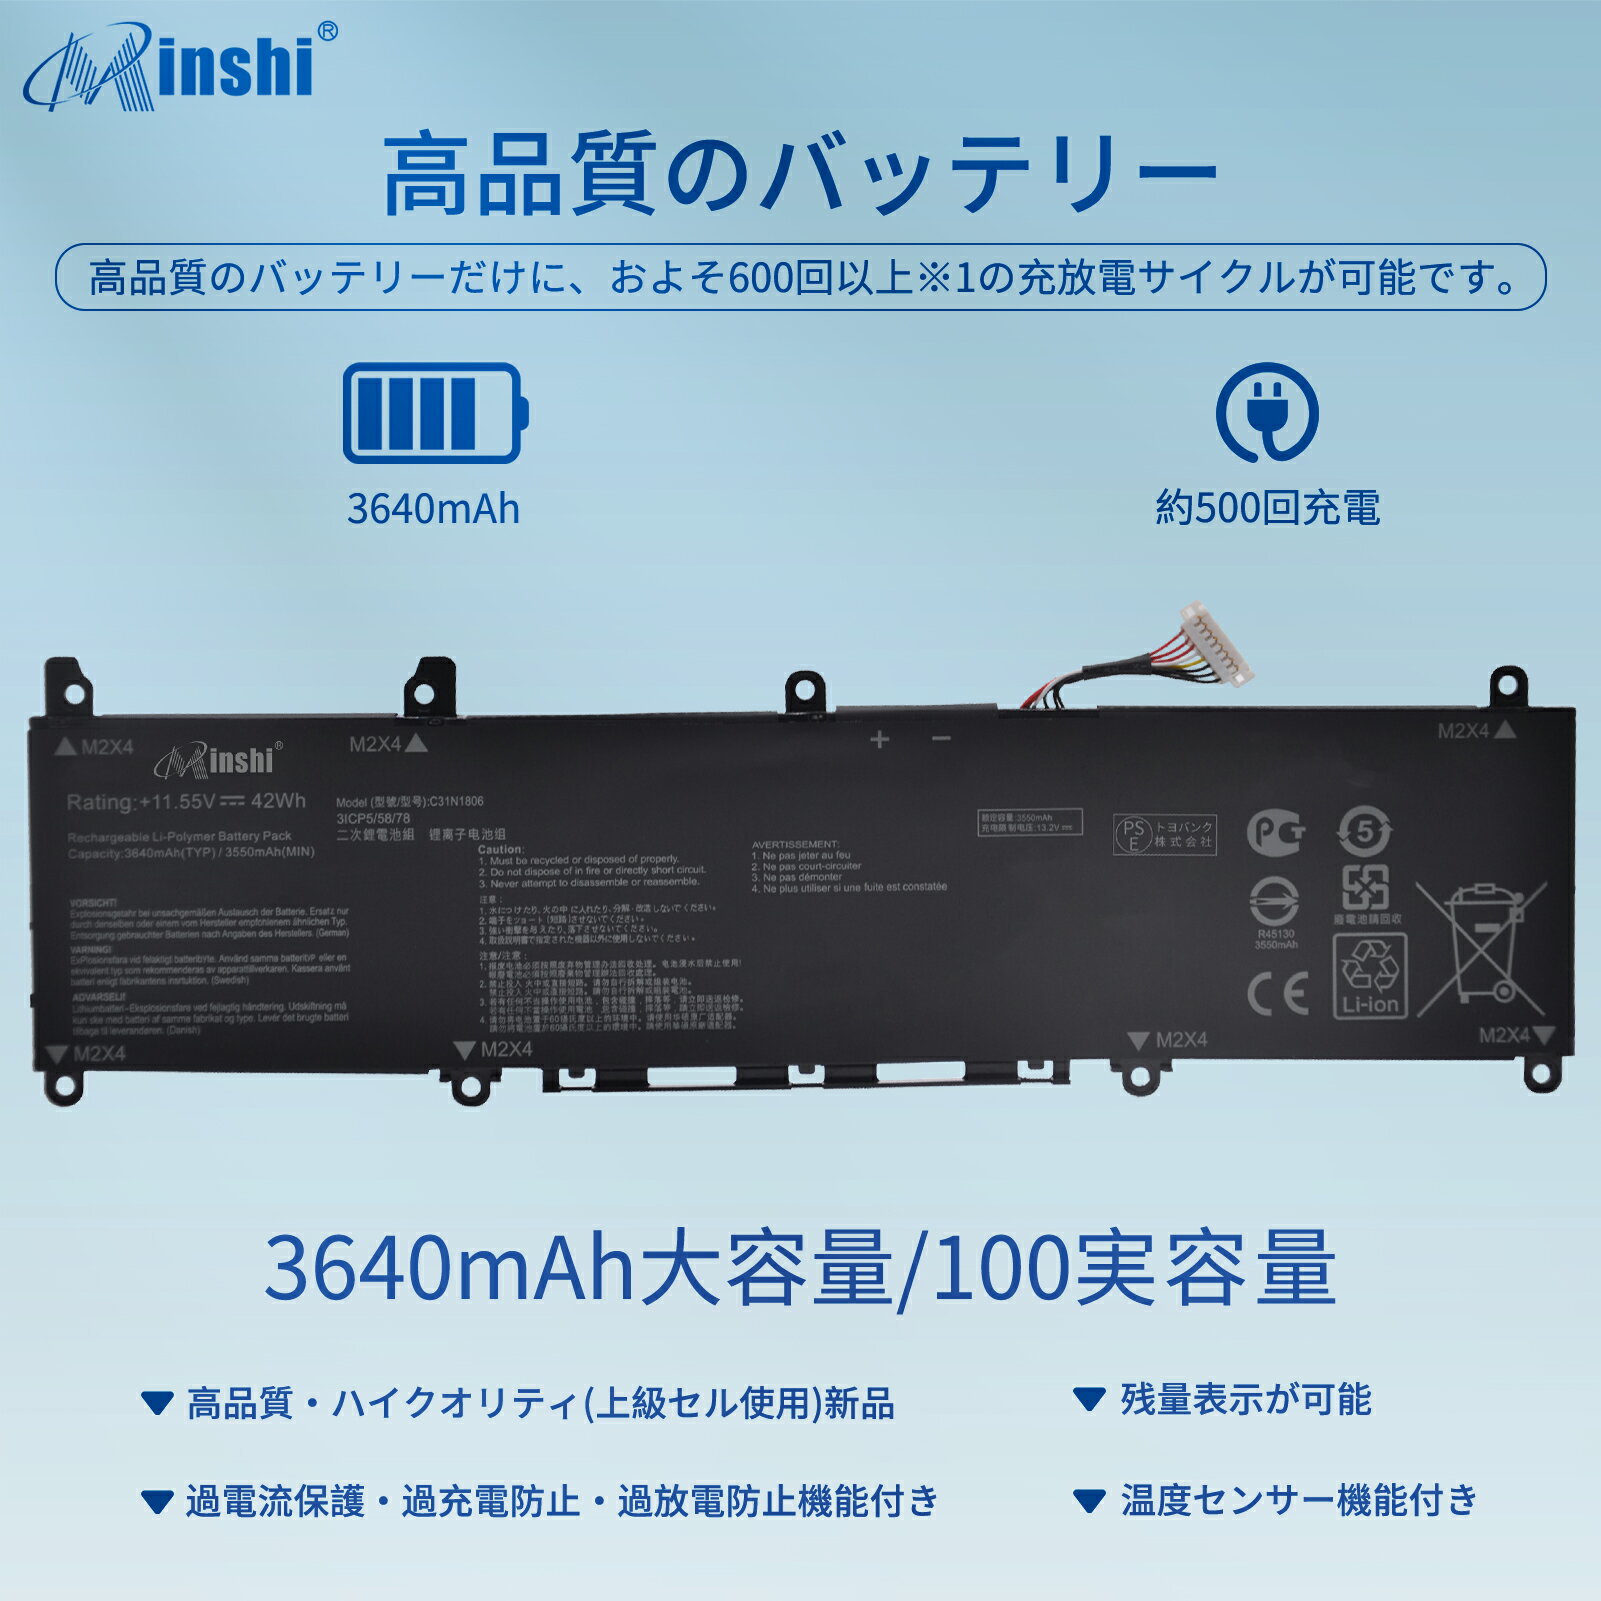 minshi 新品 ASUS ADOL 13FA 互換バッテリー 対応 高品質交換用電池パック PSE認証 1年間保証 3640mAh 2